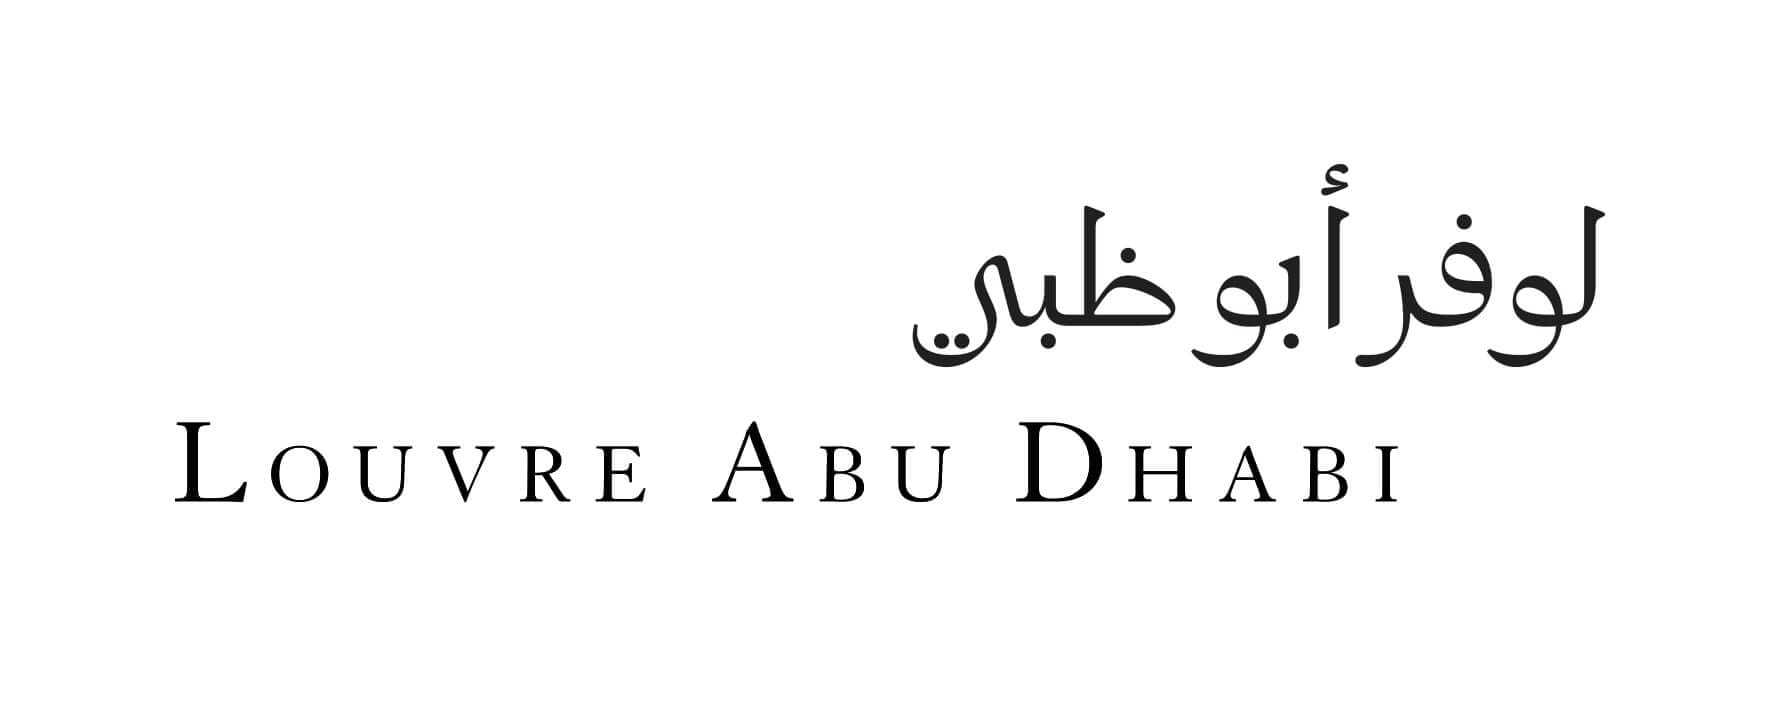 Le paraphe, logo dessiné par ichetkar pour le Louvre Abou Dabi.